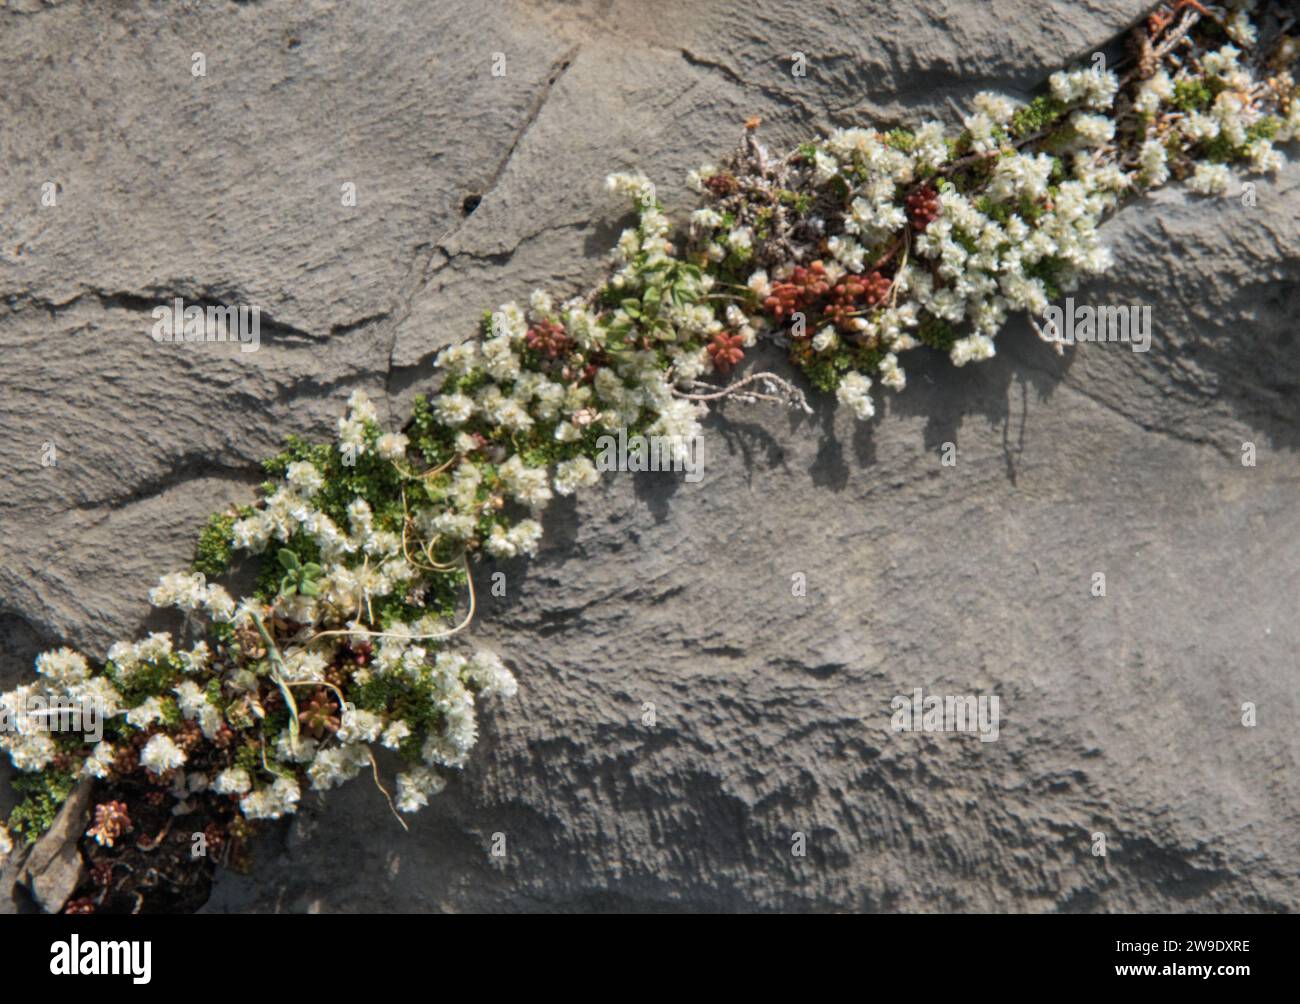 Nailwort, paronychia kapela, petites fleurs blanches poussant la plante dans une fissure d'une roche Banque D'Images